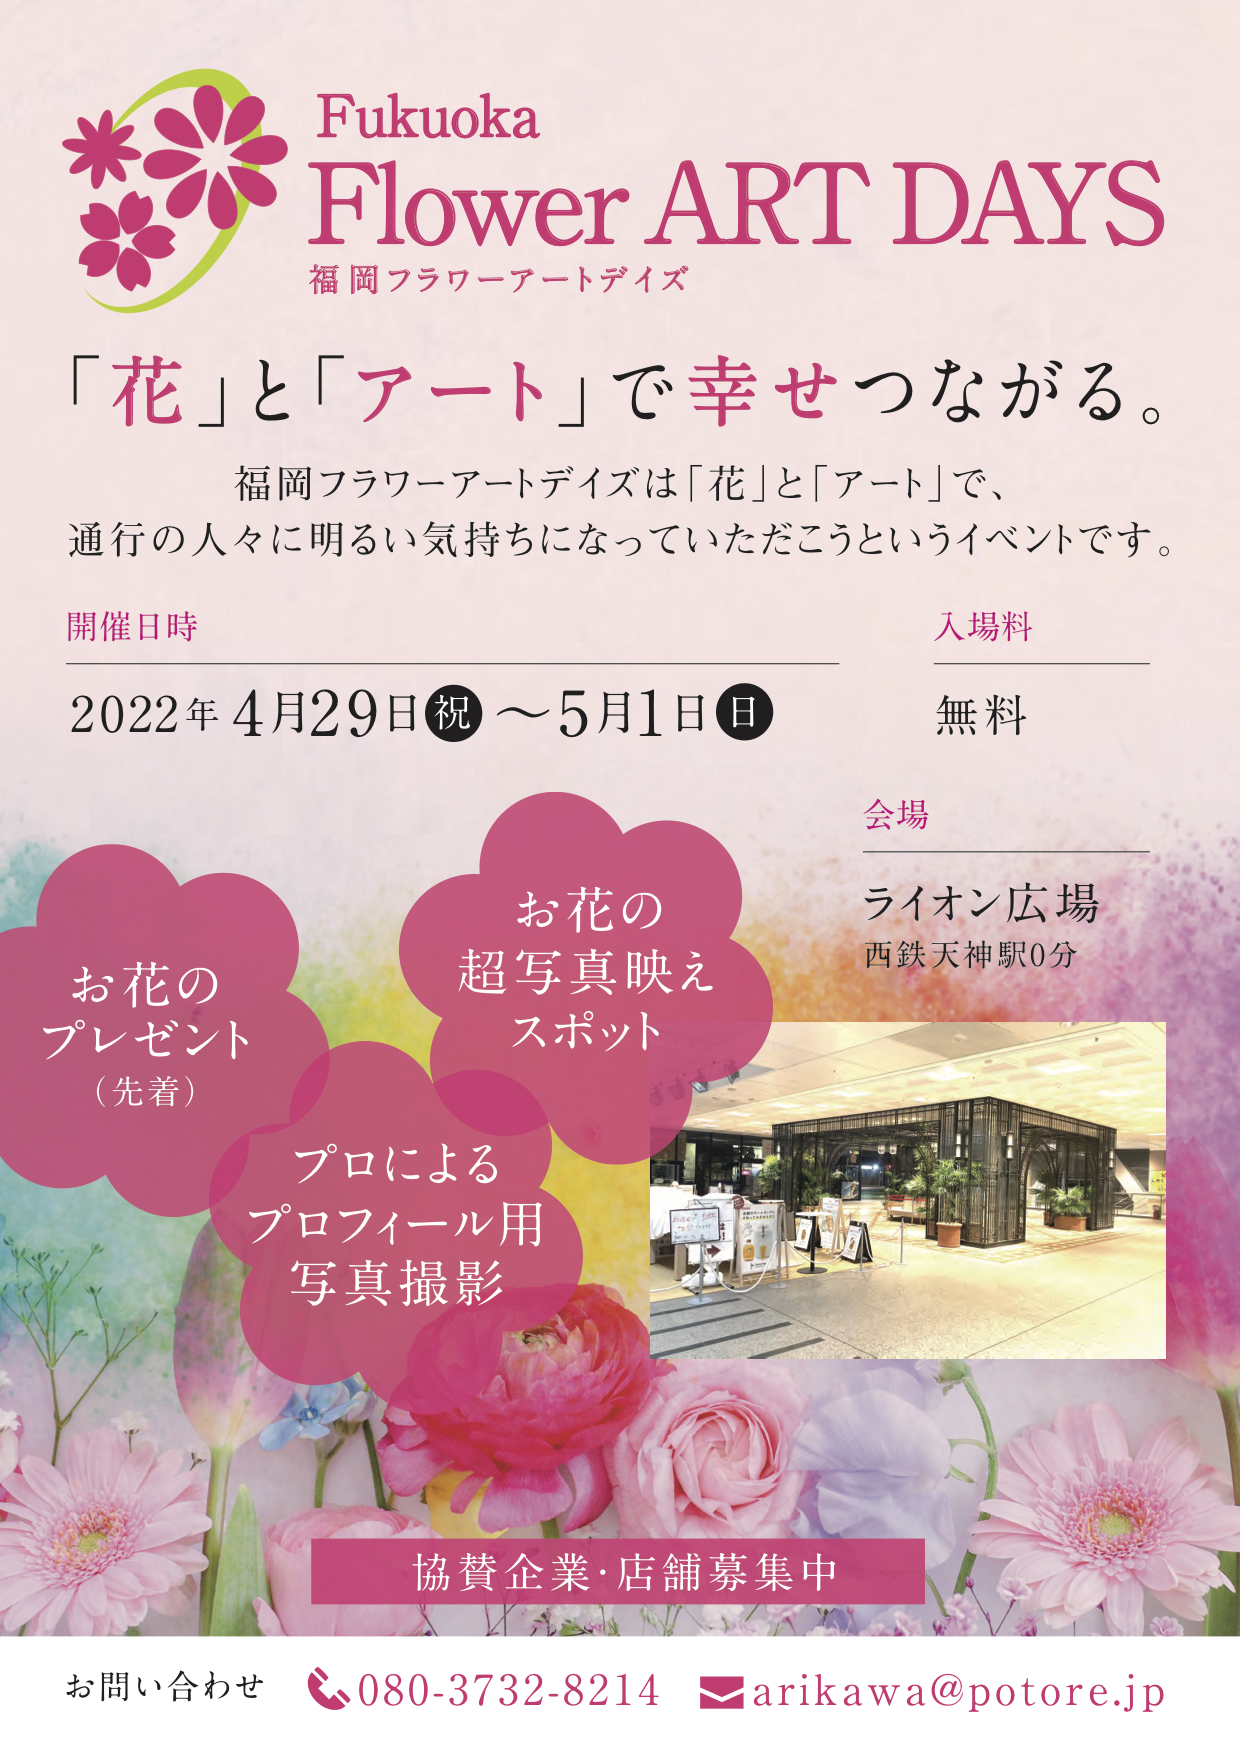 4 29 5 1開催 花とアートで幸せつながるfukuoka Flower Art Days フクリパ